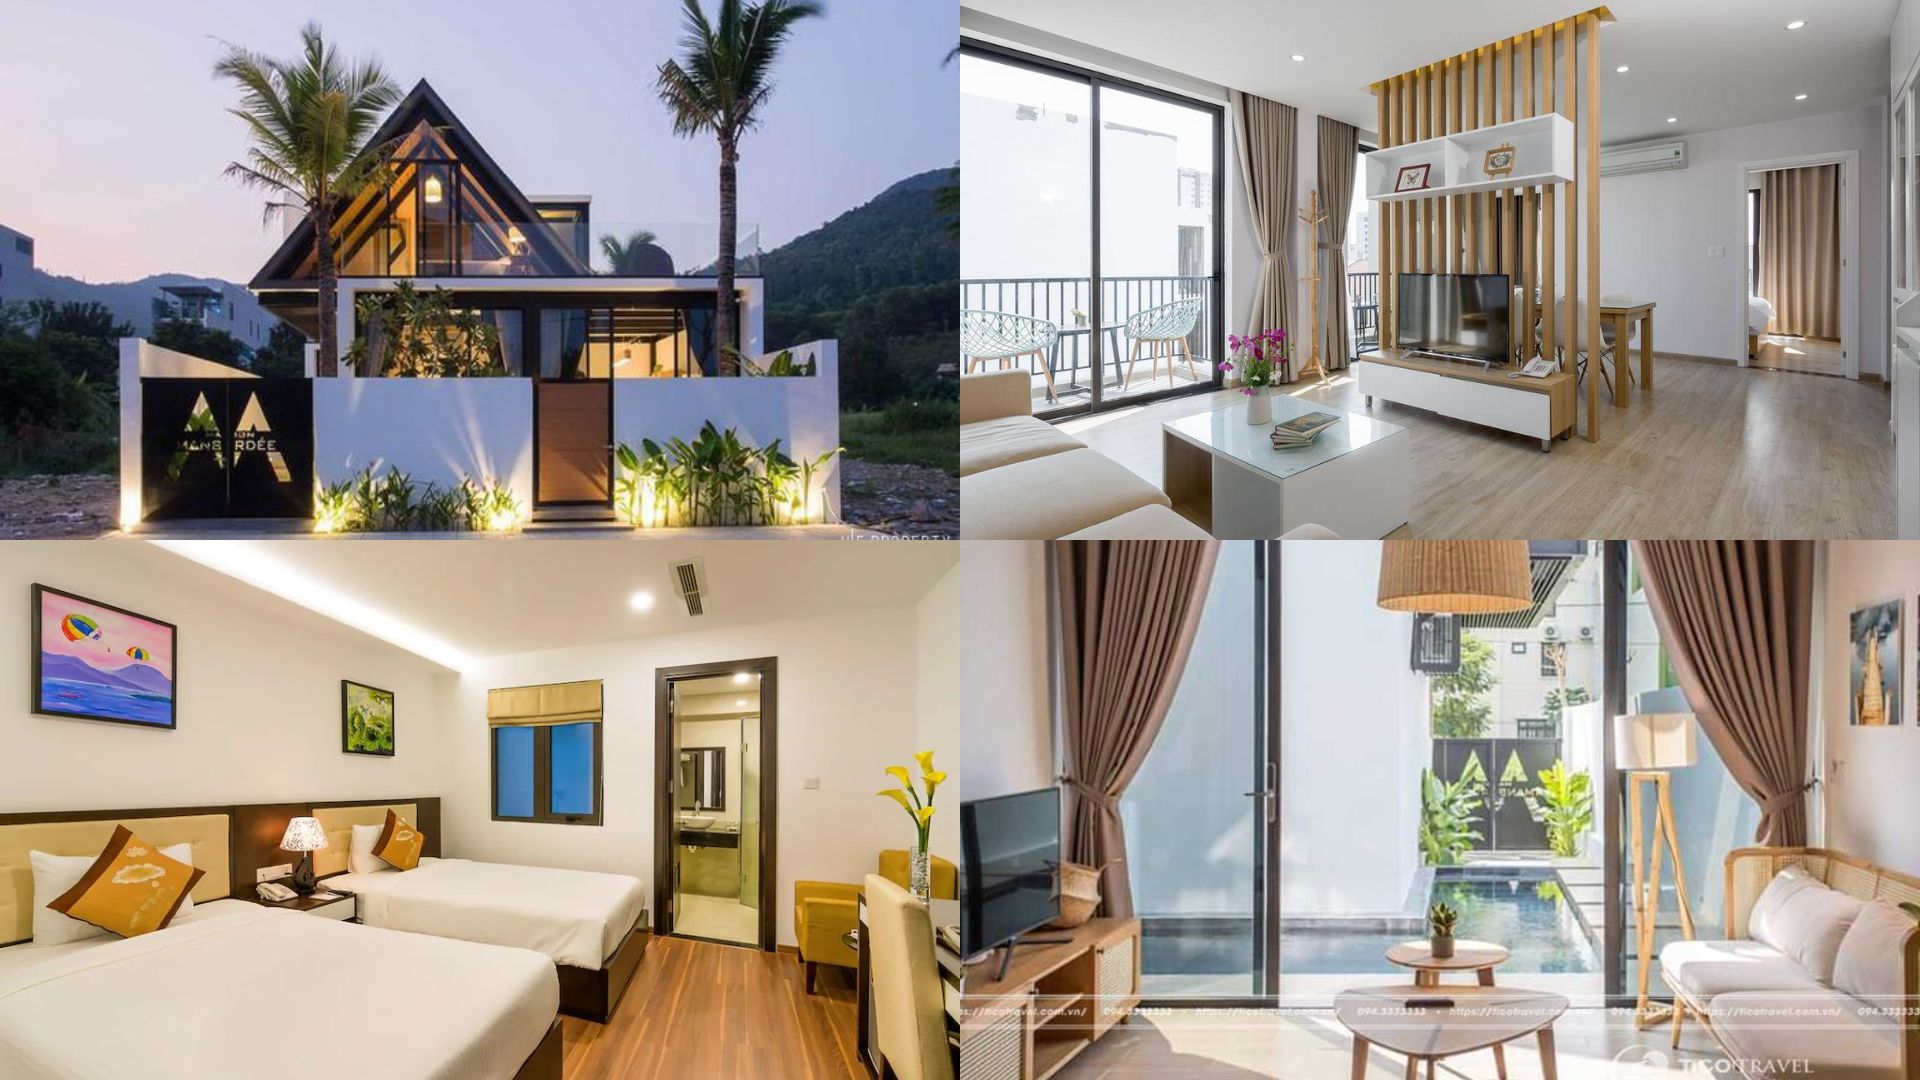 Top 20 Biệt thự villa Đà Nẵng giá rẻ view đẹp gần biển có hồ bơi